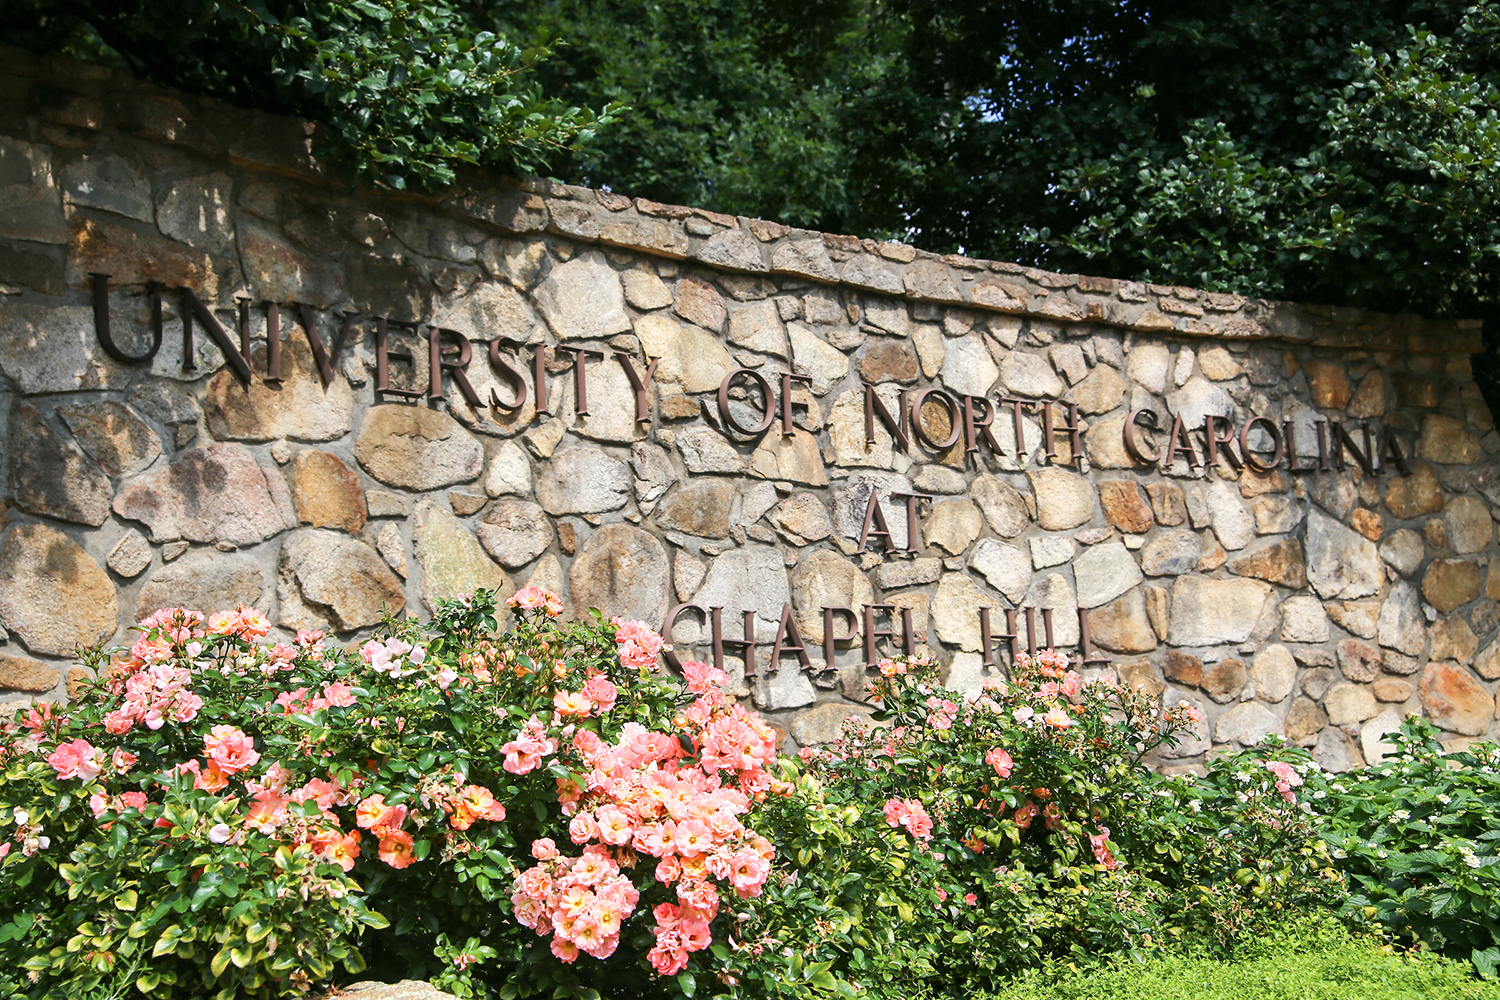 UNC Chapel Hill Sign Representing UNC Chapel Hill